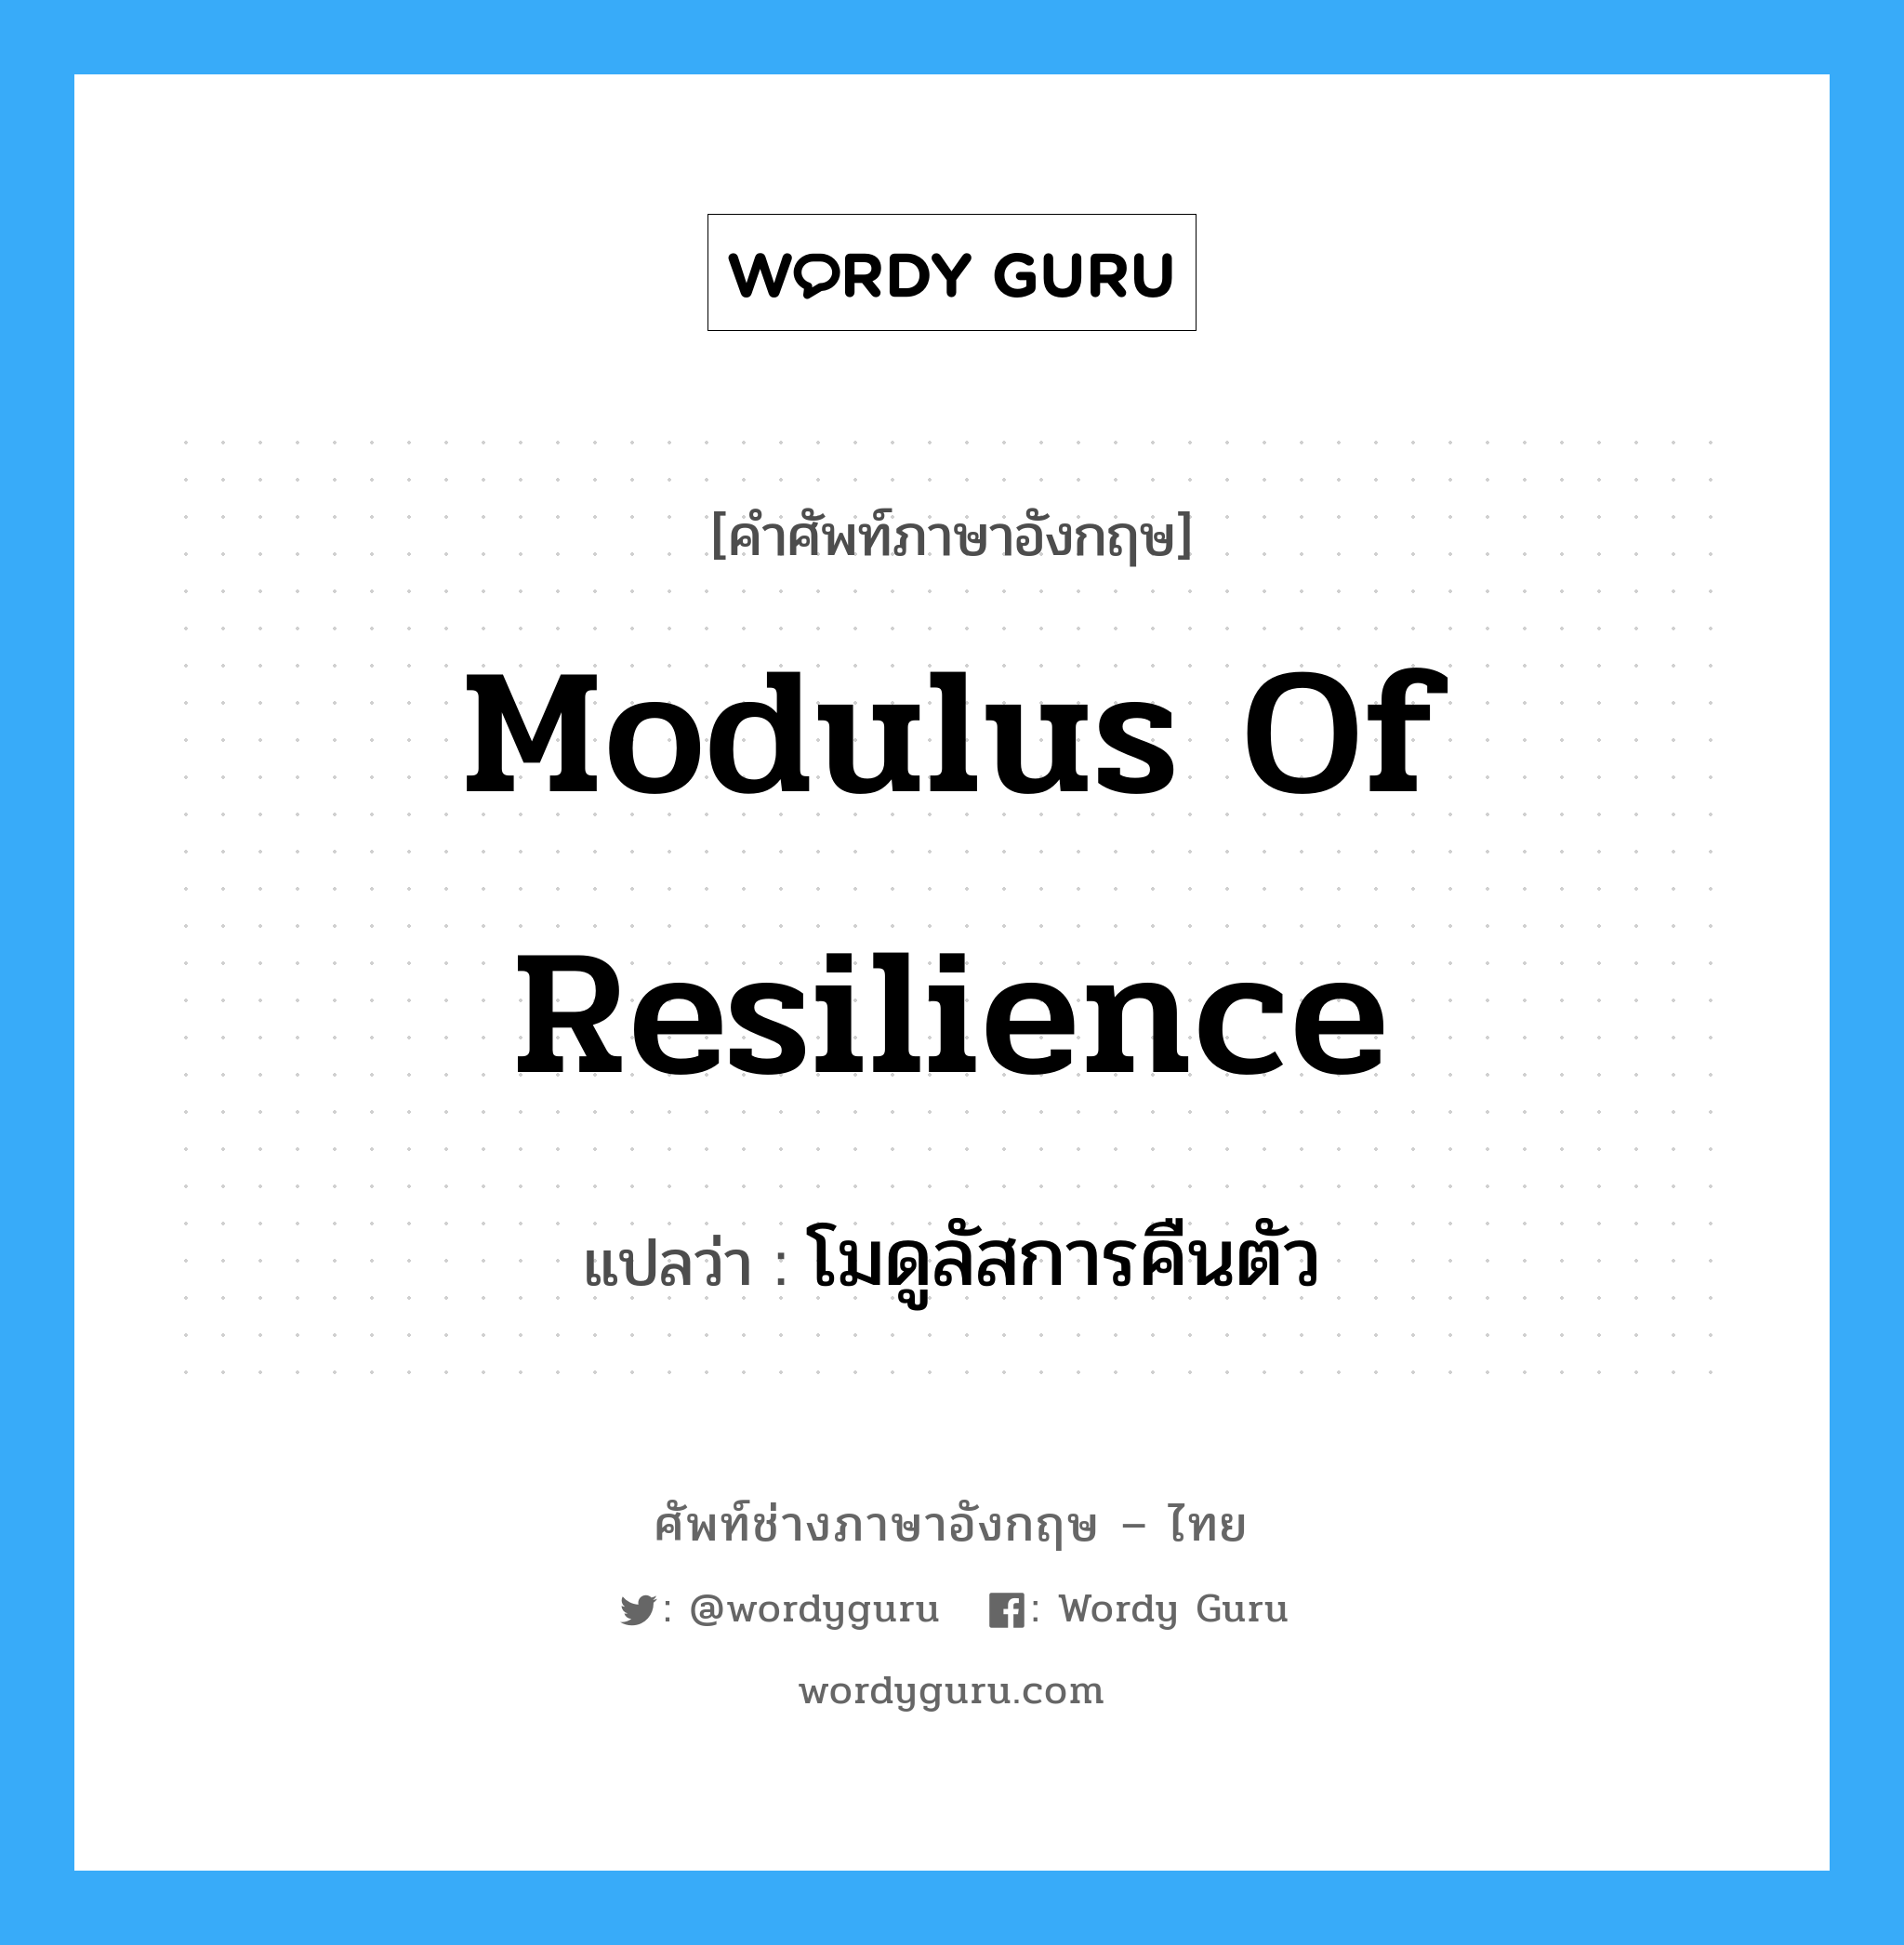 modulus of resilience แปลว่า?, คำศัพท์ช่างภาษาอังกฤษ - ไทย modulus of resilience คำศัพท์ภาษาอังกฤษ modulus of resilience แปลว่า โมดูลัสการคืนตัว